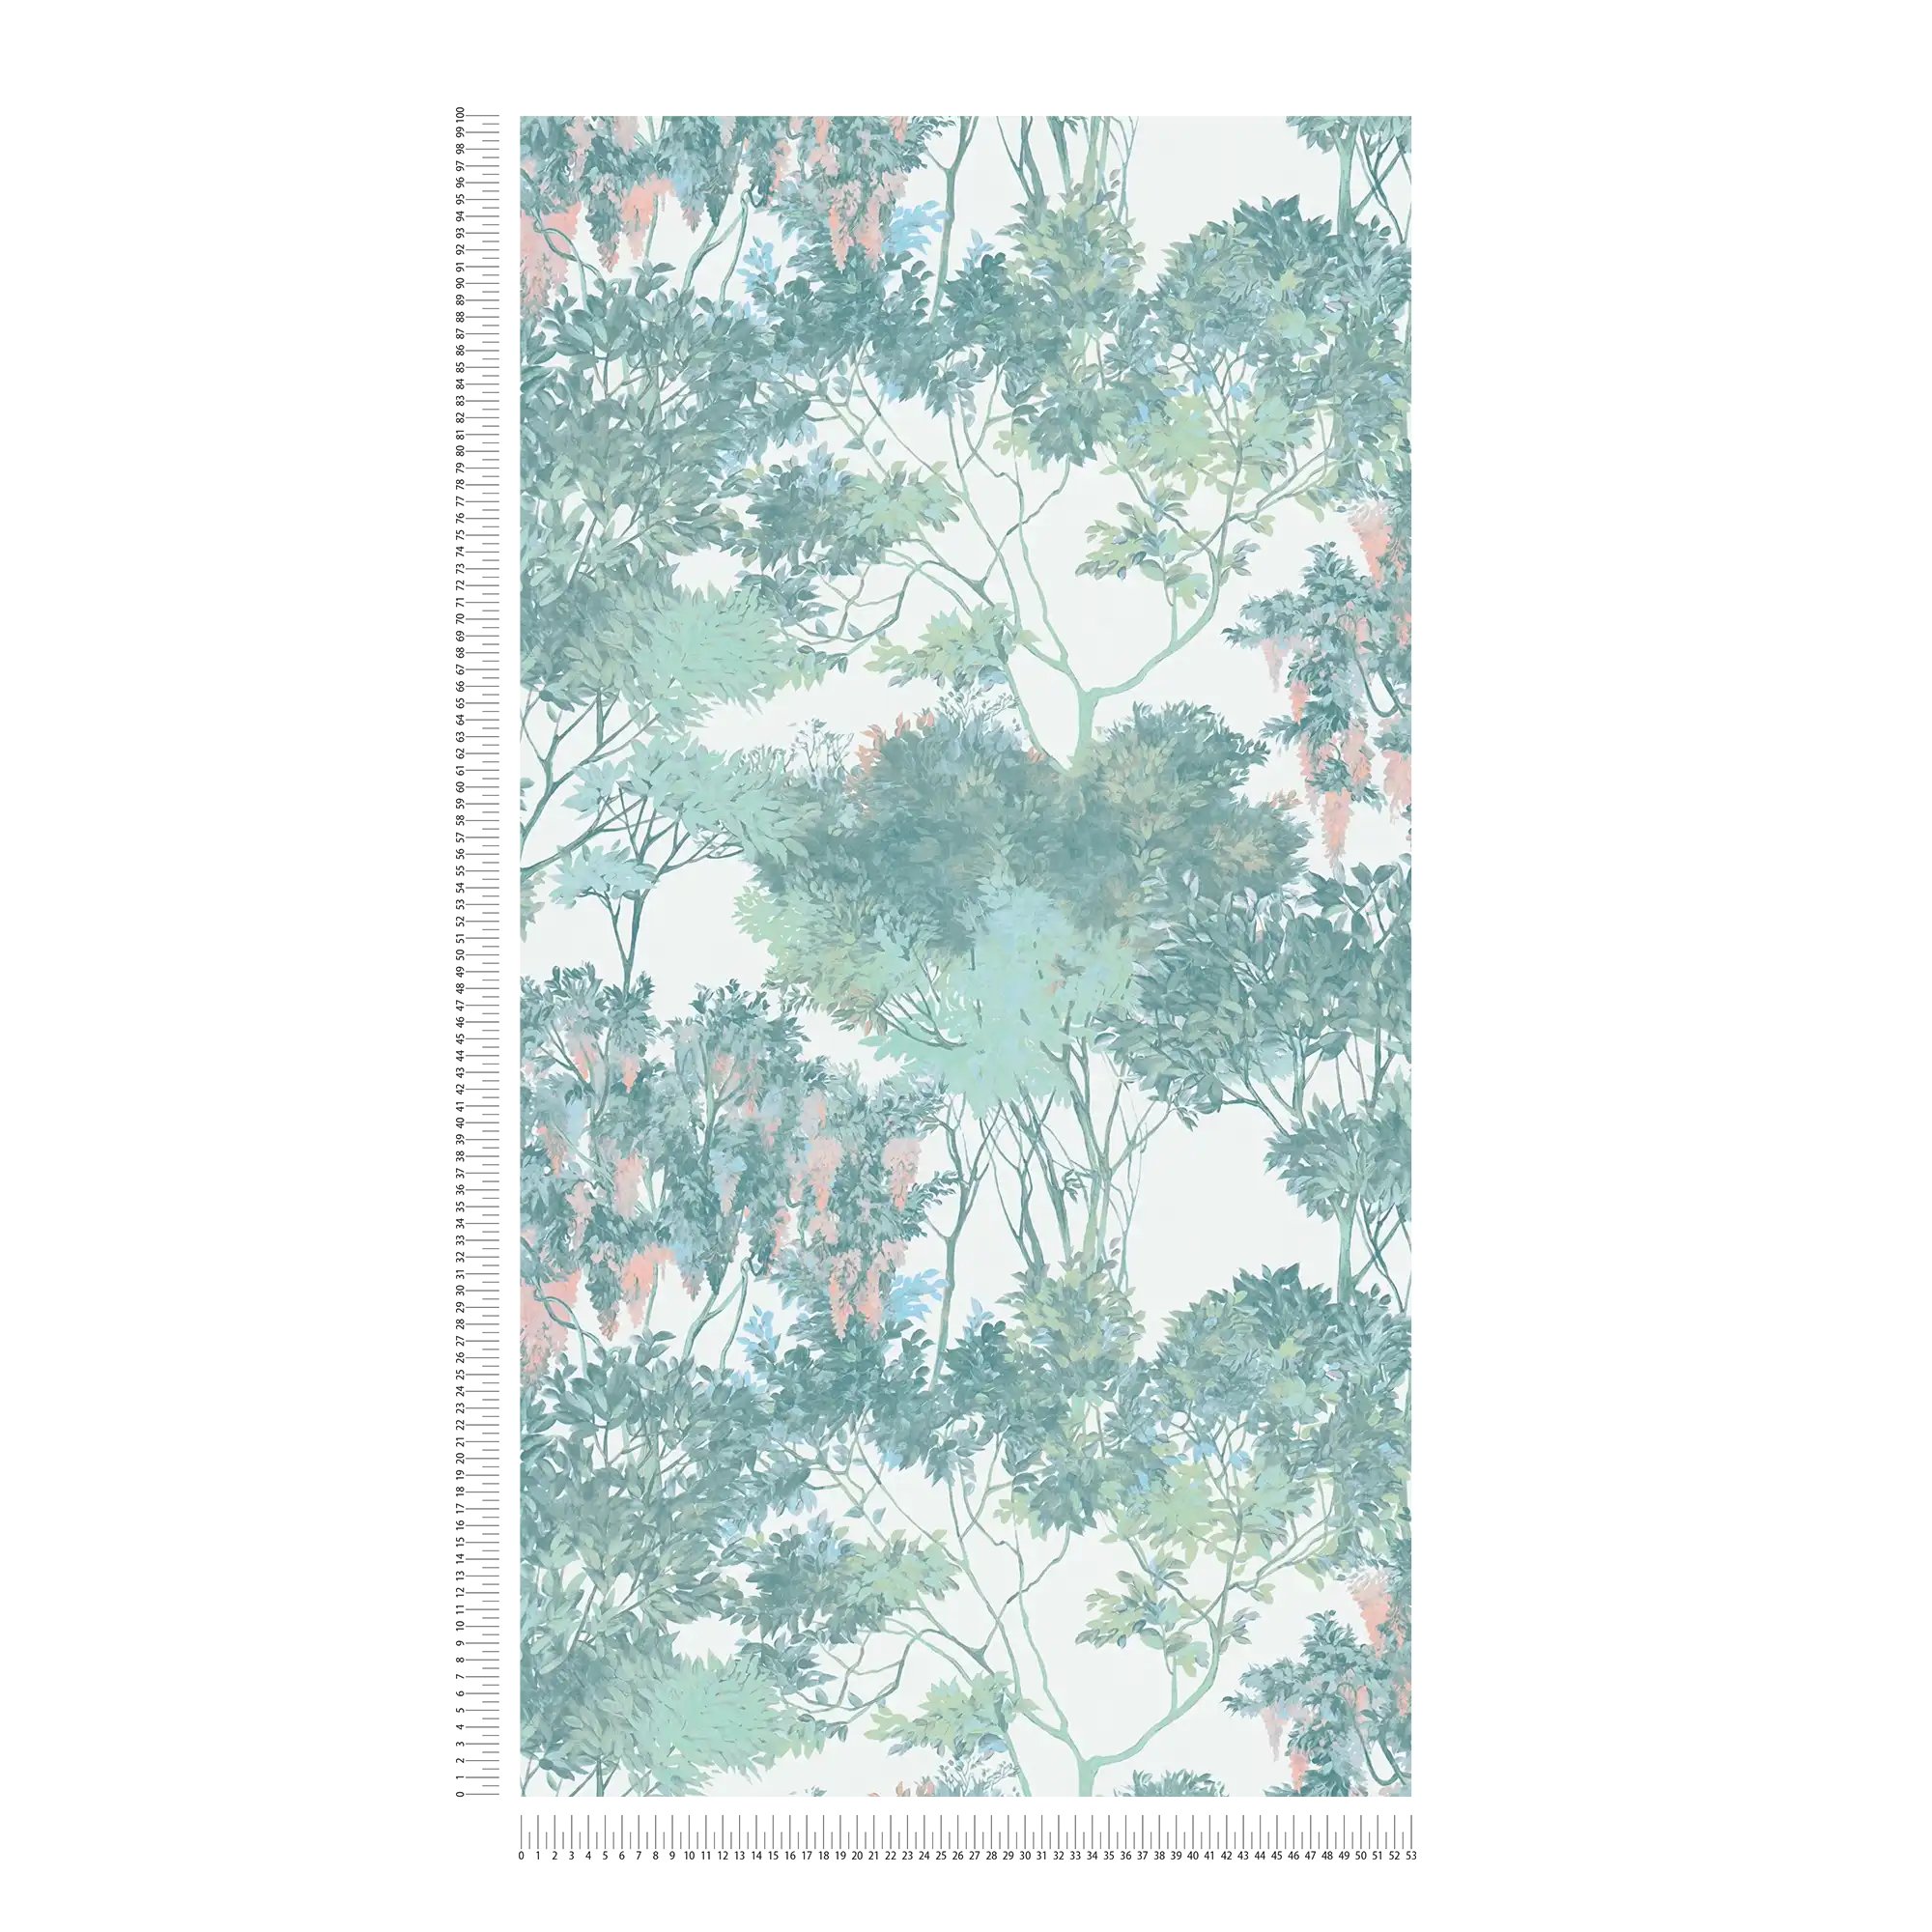             Vliestapete im Dschungelstyle mit Bäumen – Bunt, Grün, Weiß
        